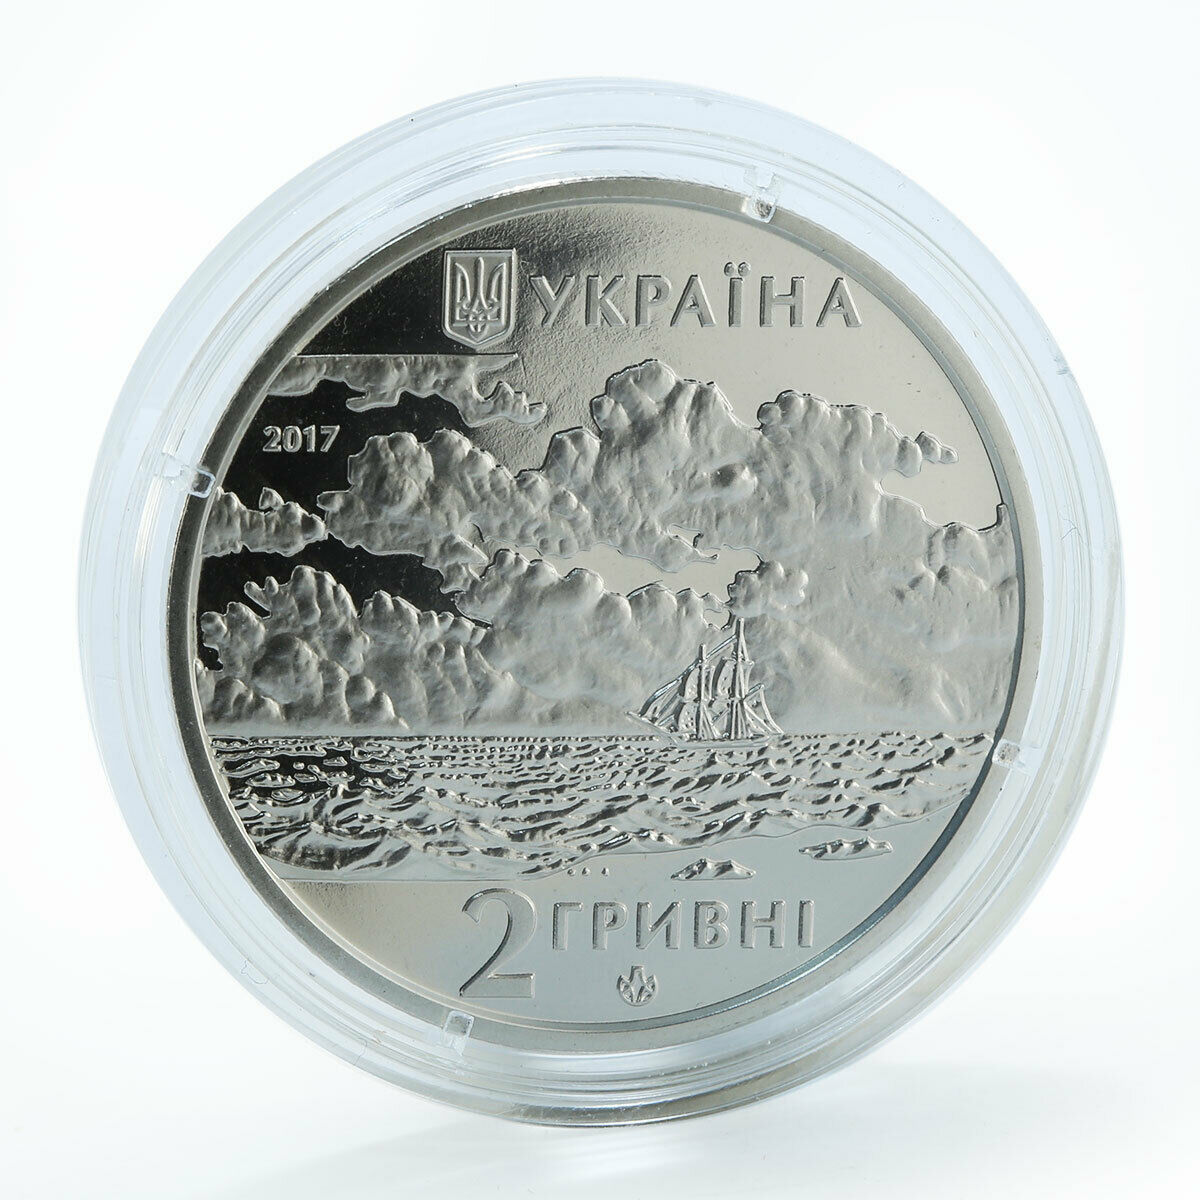 Ukraine 2 hryvnia Ivan Aivazovsky Outstanding artist sea marine nickel coin 2017